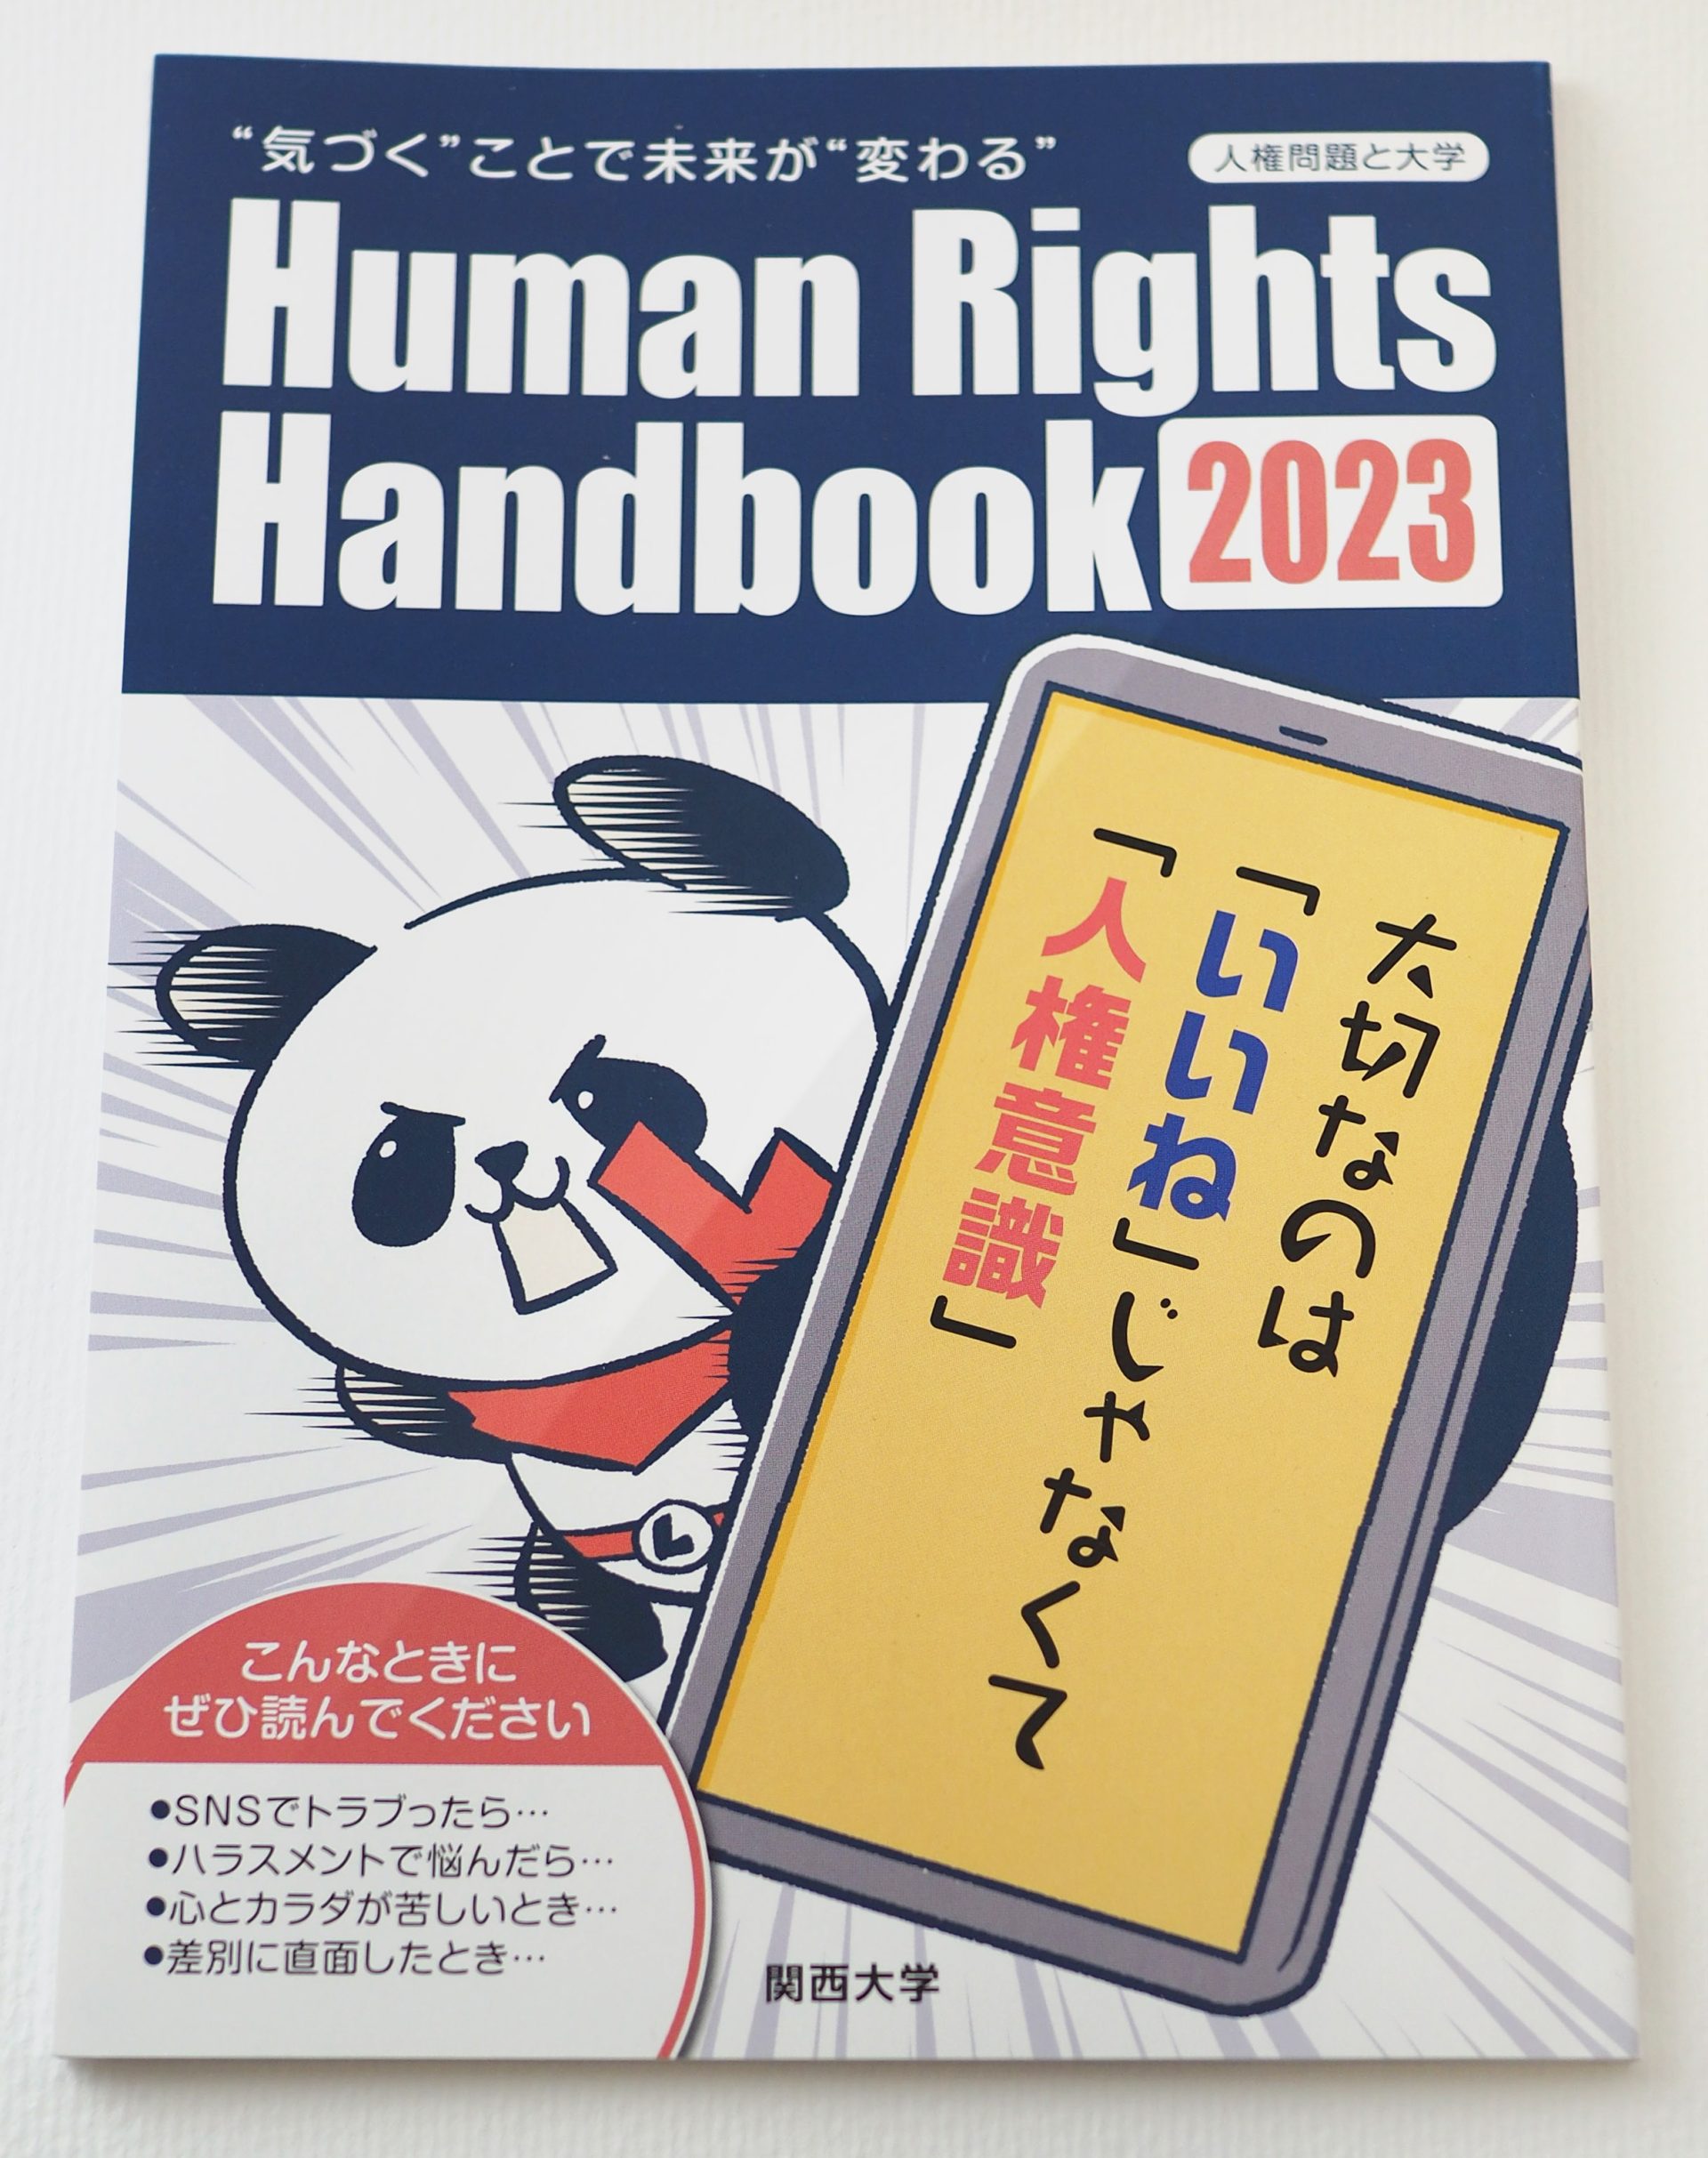 関大人権冊子 Human Rights Handbook 2023